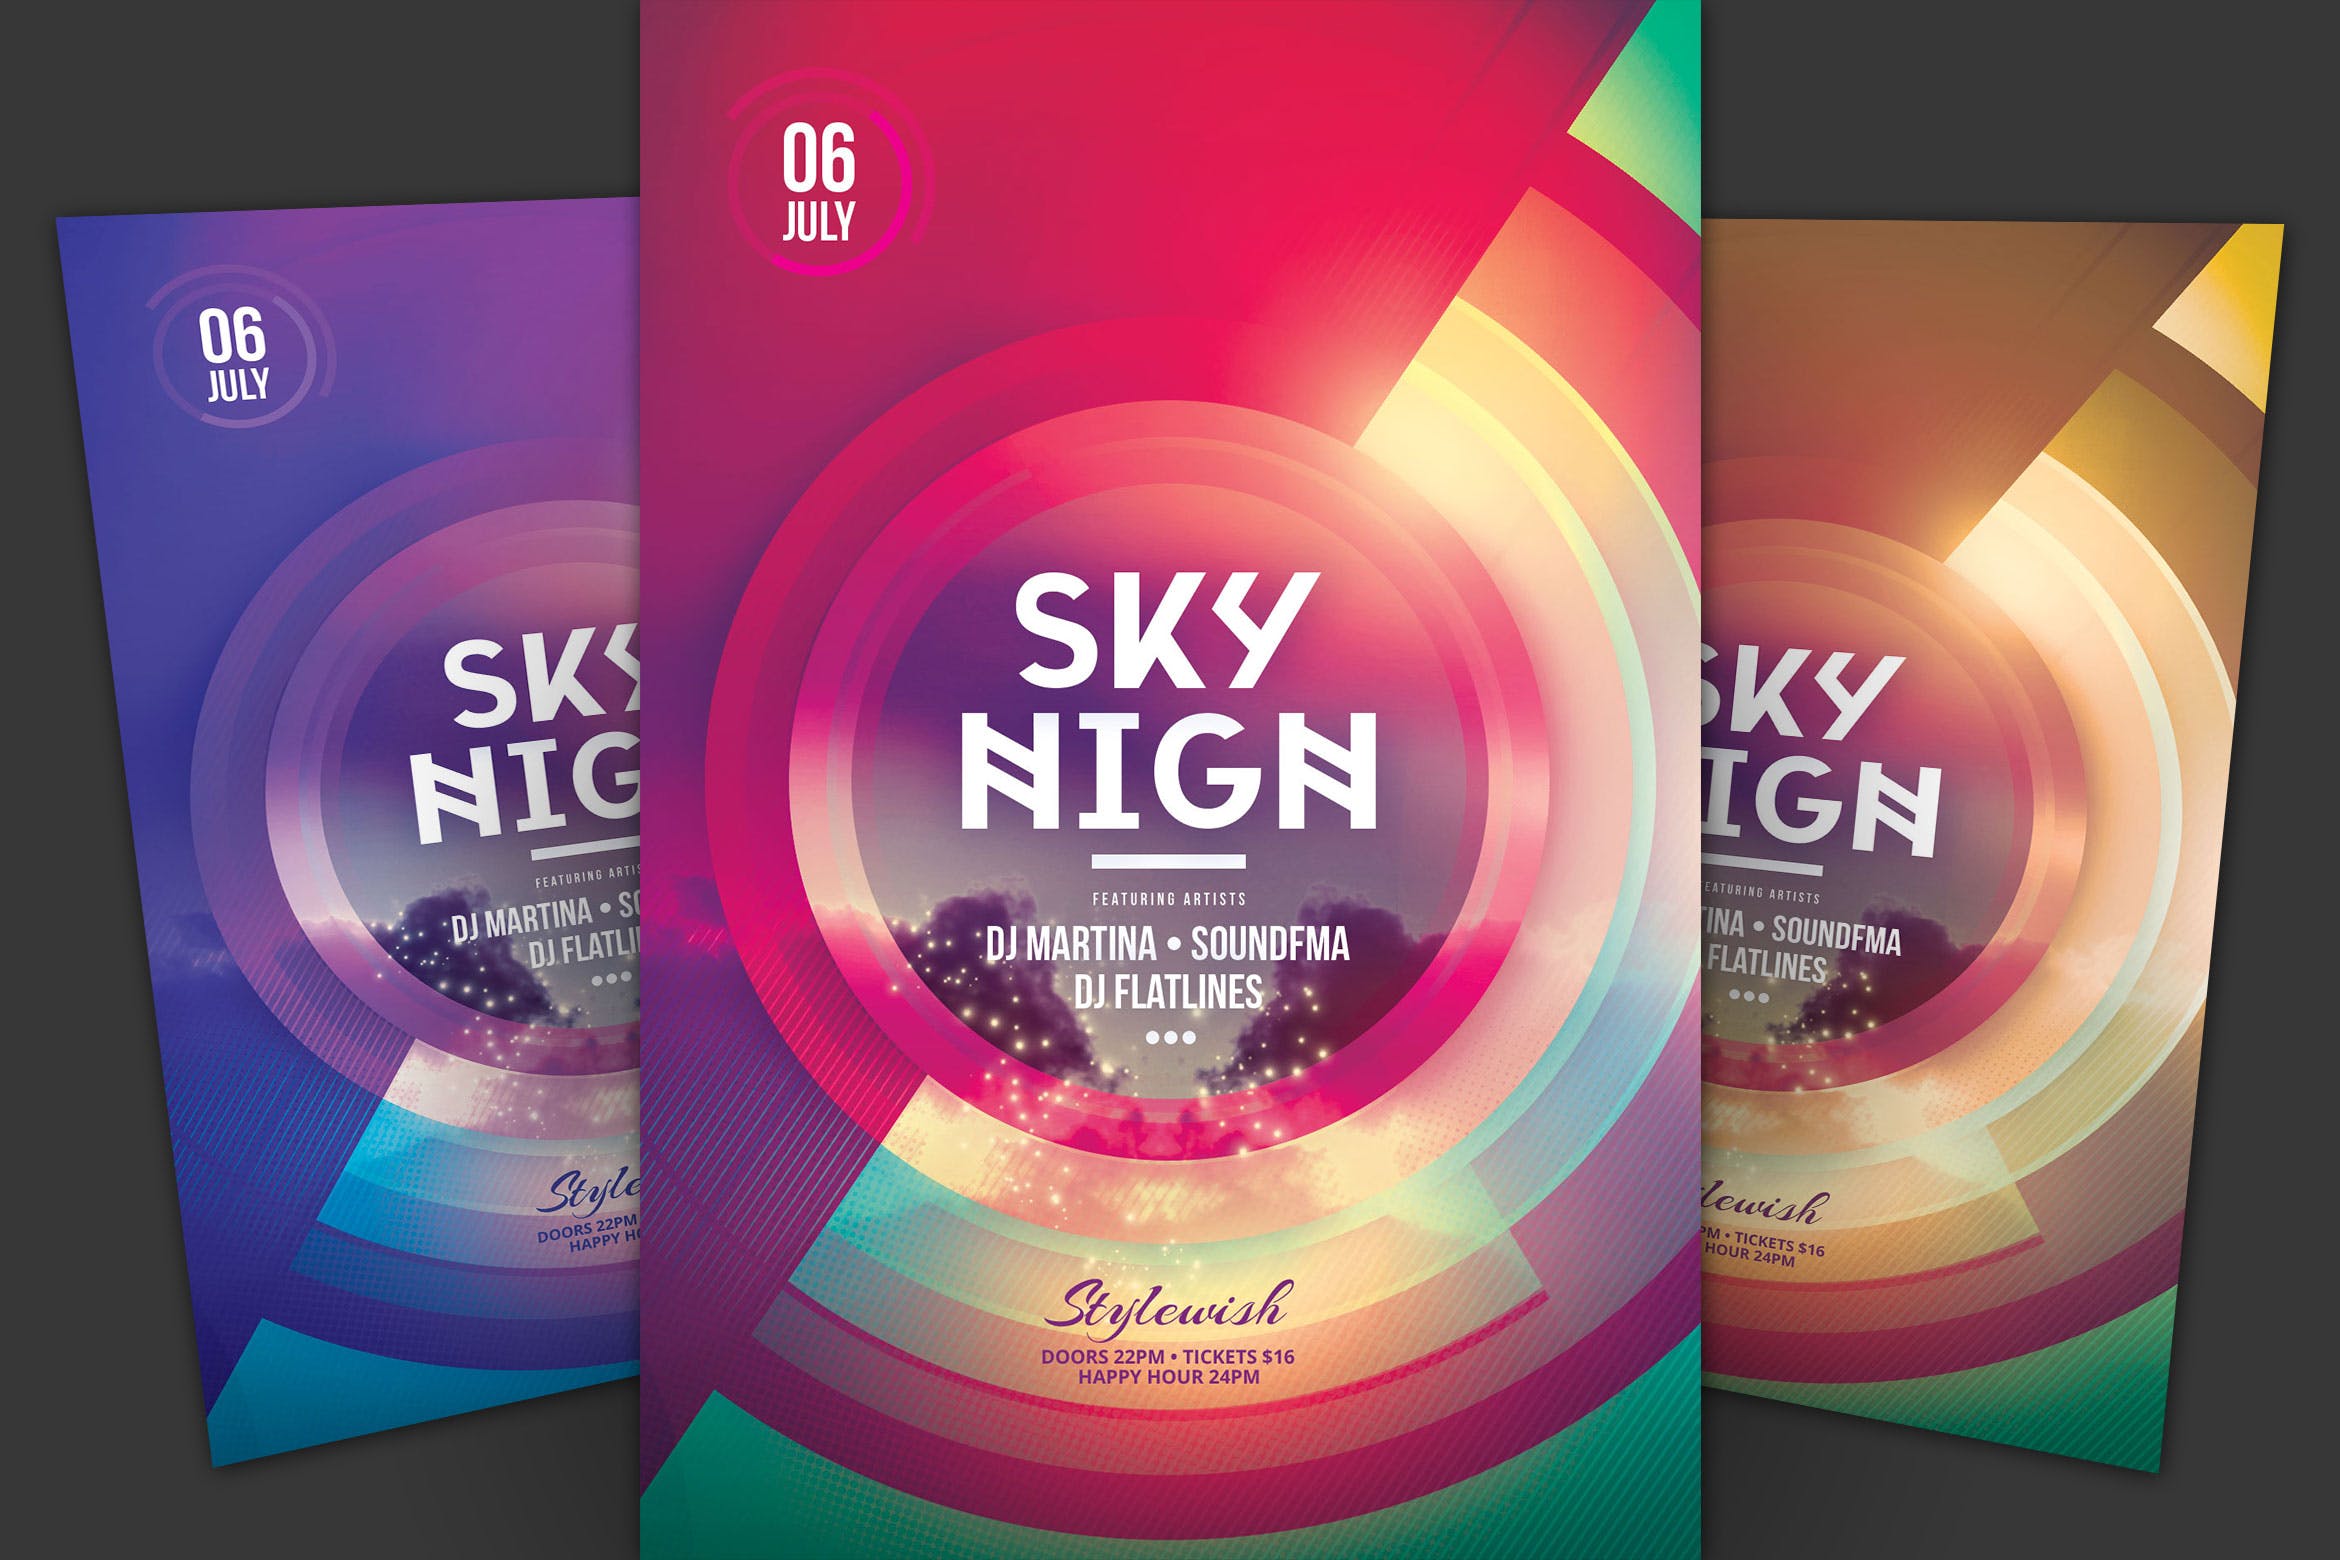 个性音乐主题活动海报传单素材库精选PSD模板 Sky High Flyer插图